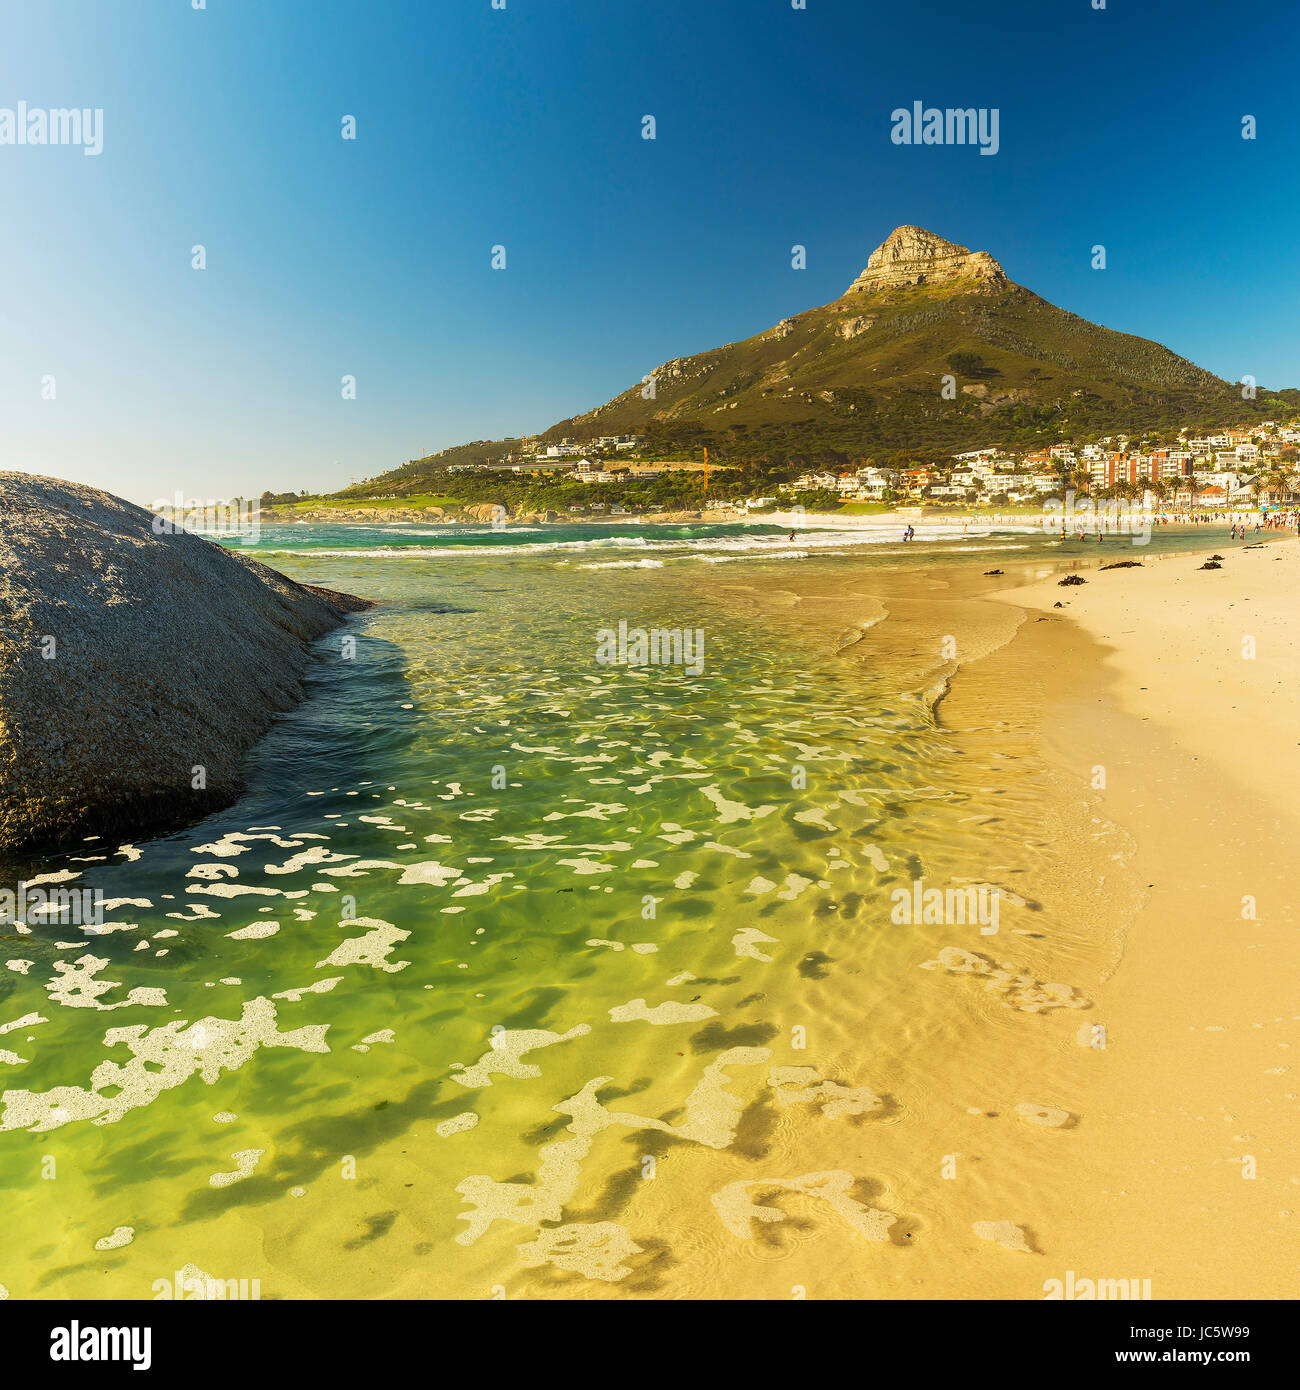 CAMPS BAY, SUD AFRICA - 5 ottobre 2015: persone non identificate sulla spiaggia di Camps Bay a Cape Town, Sud Africa, con testa di leone dietro di picco. Foto Stock